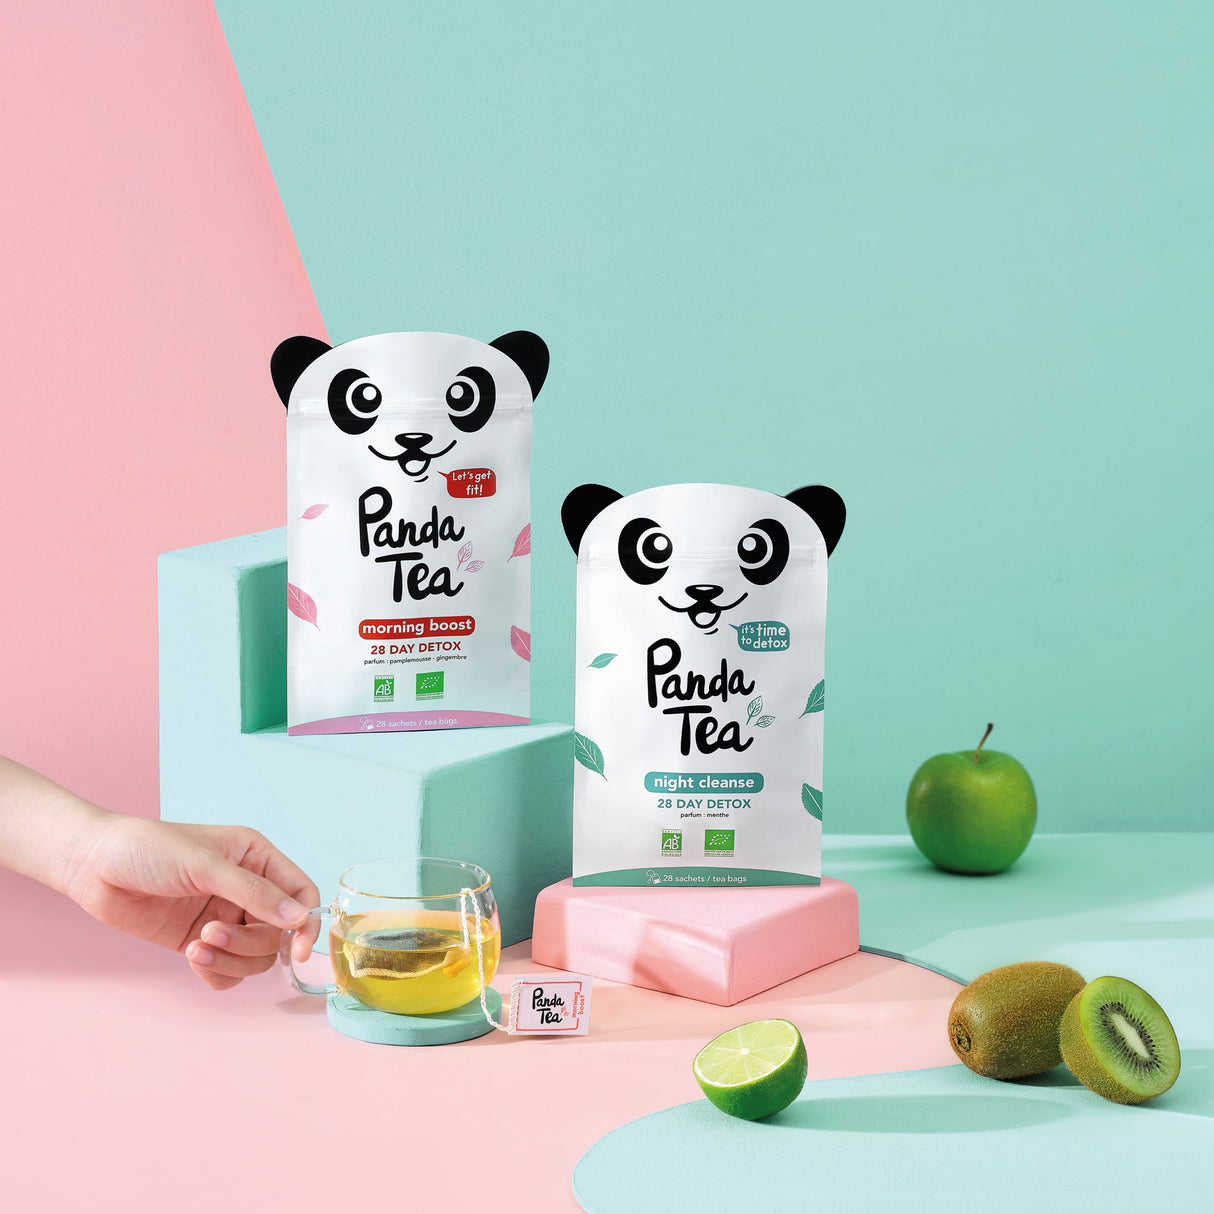 Panda Vita  Detox – Panda Tea